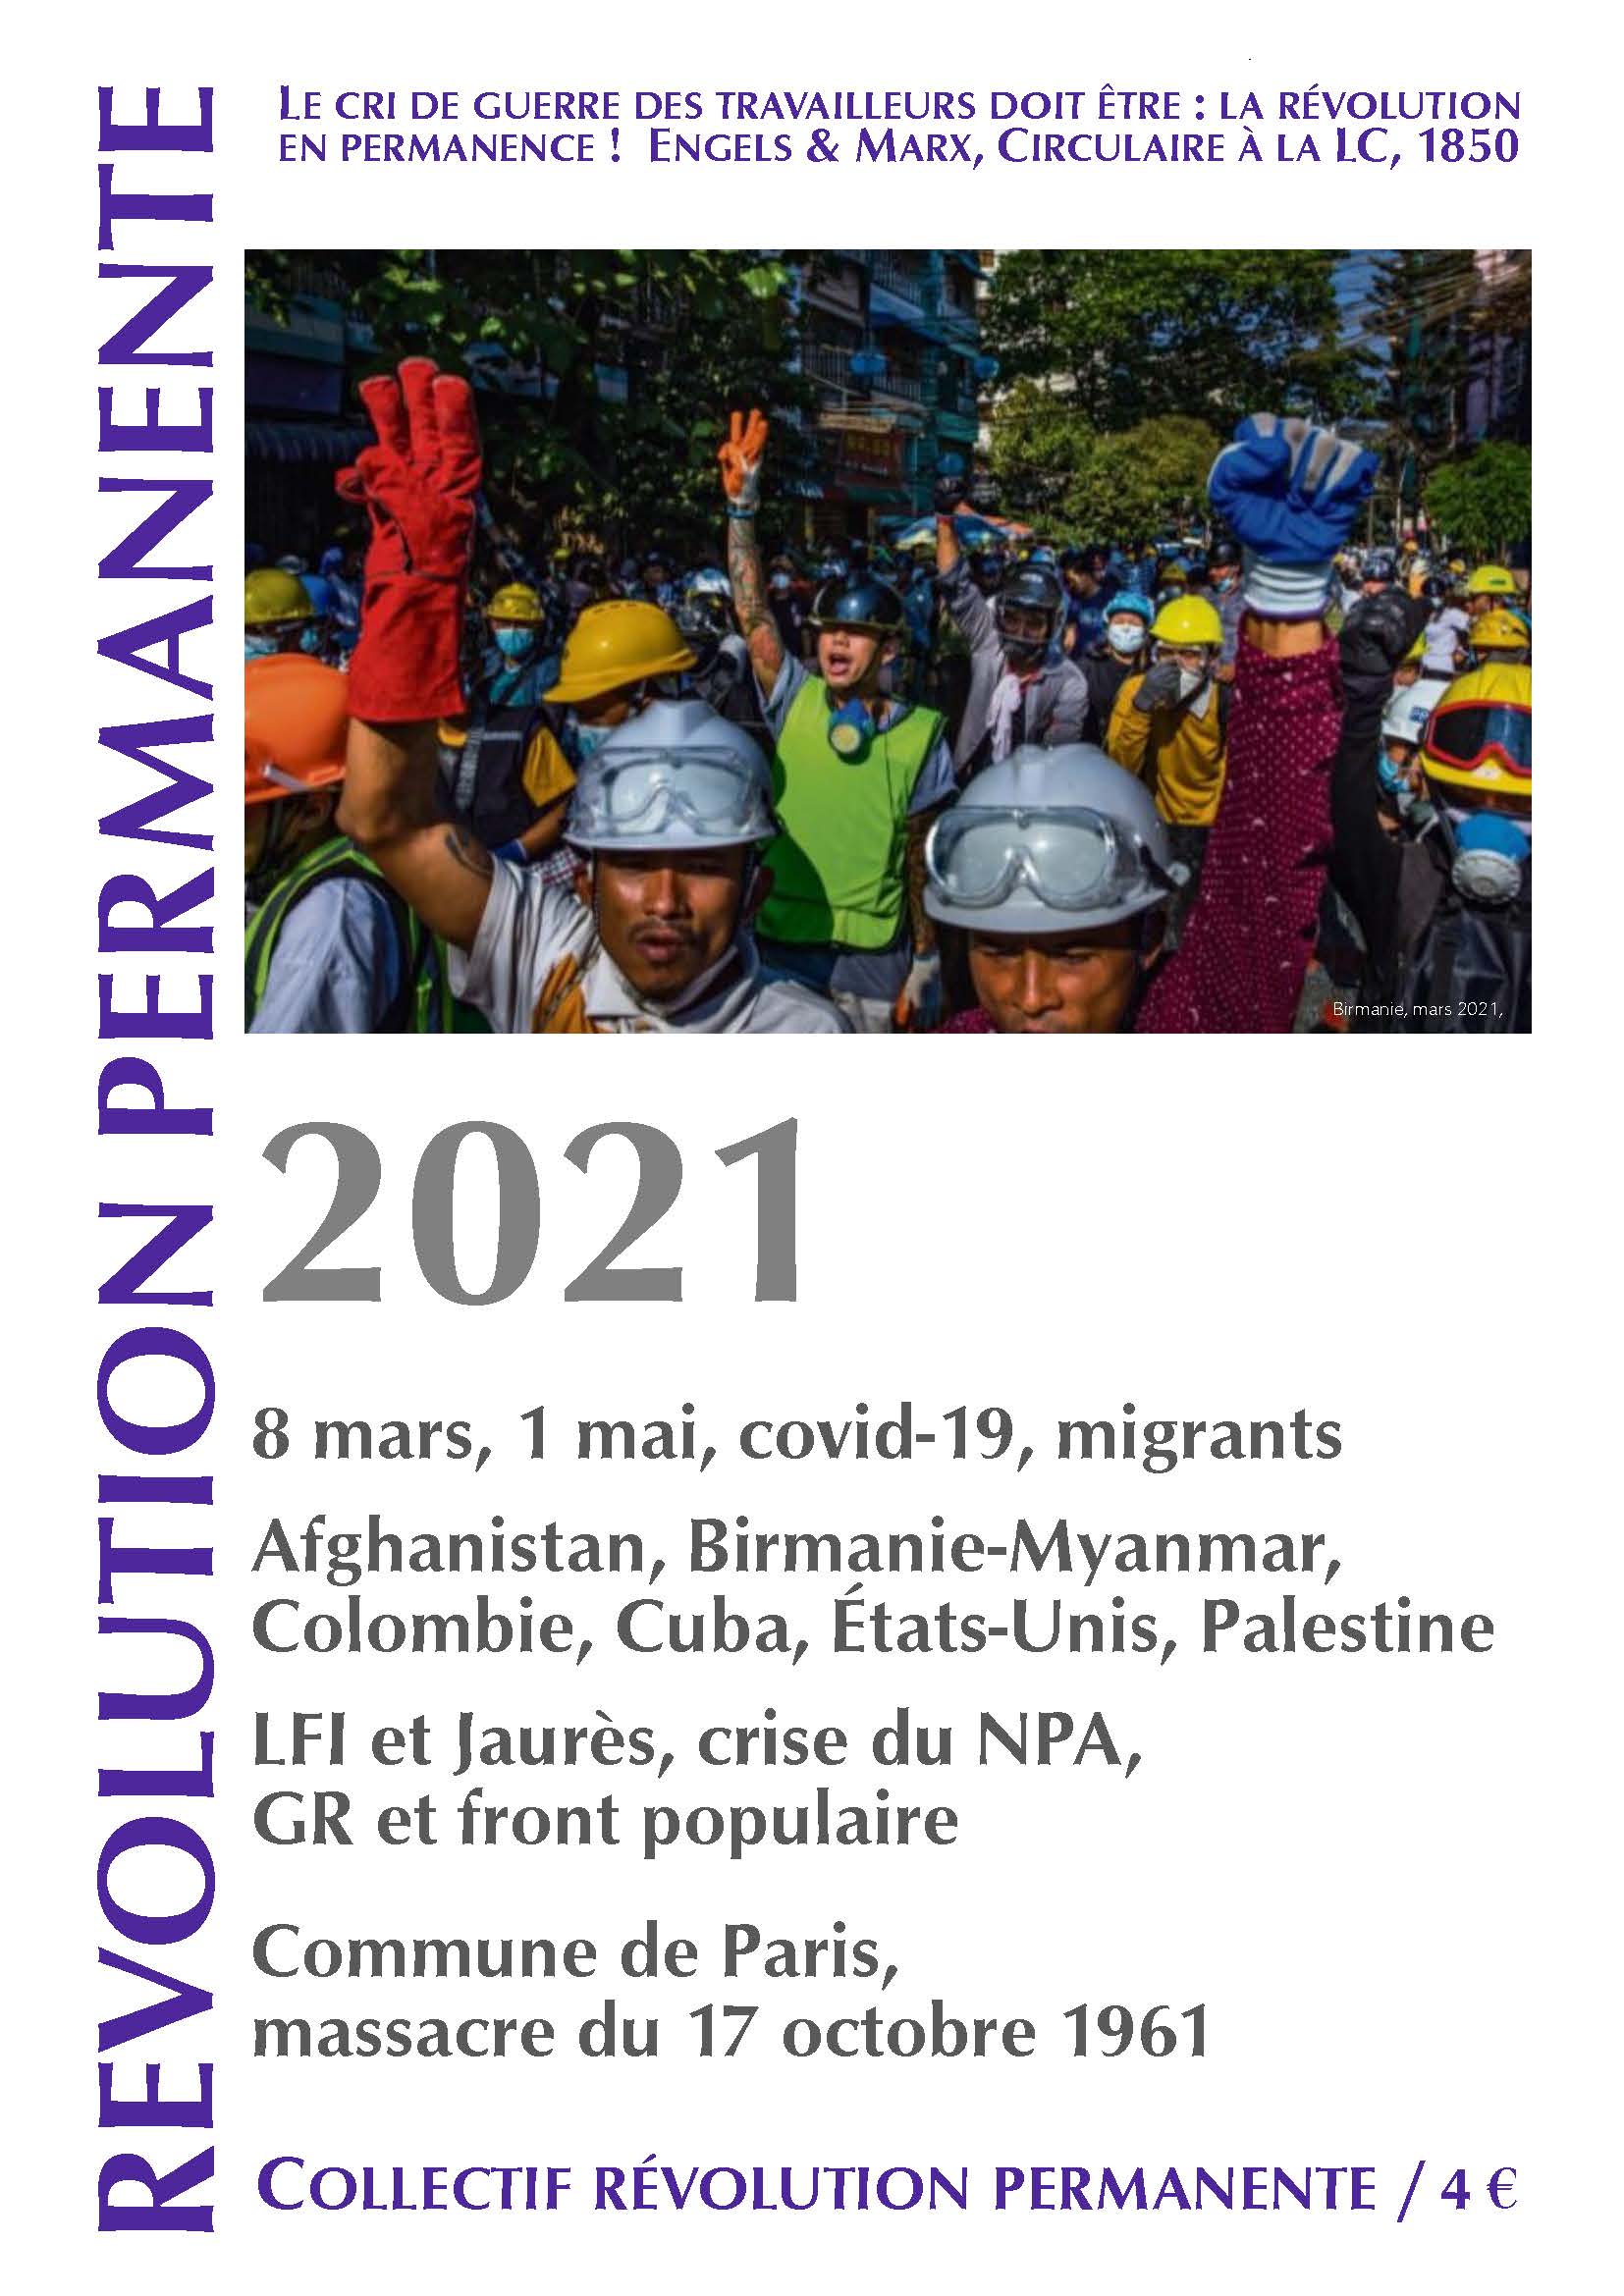 couverture Révolution permanente 2020